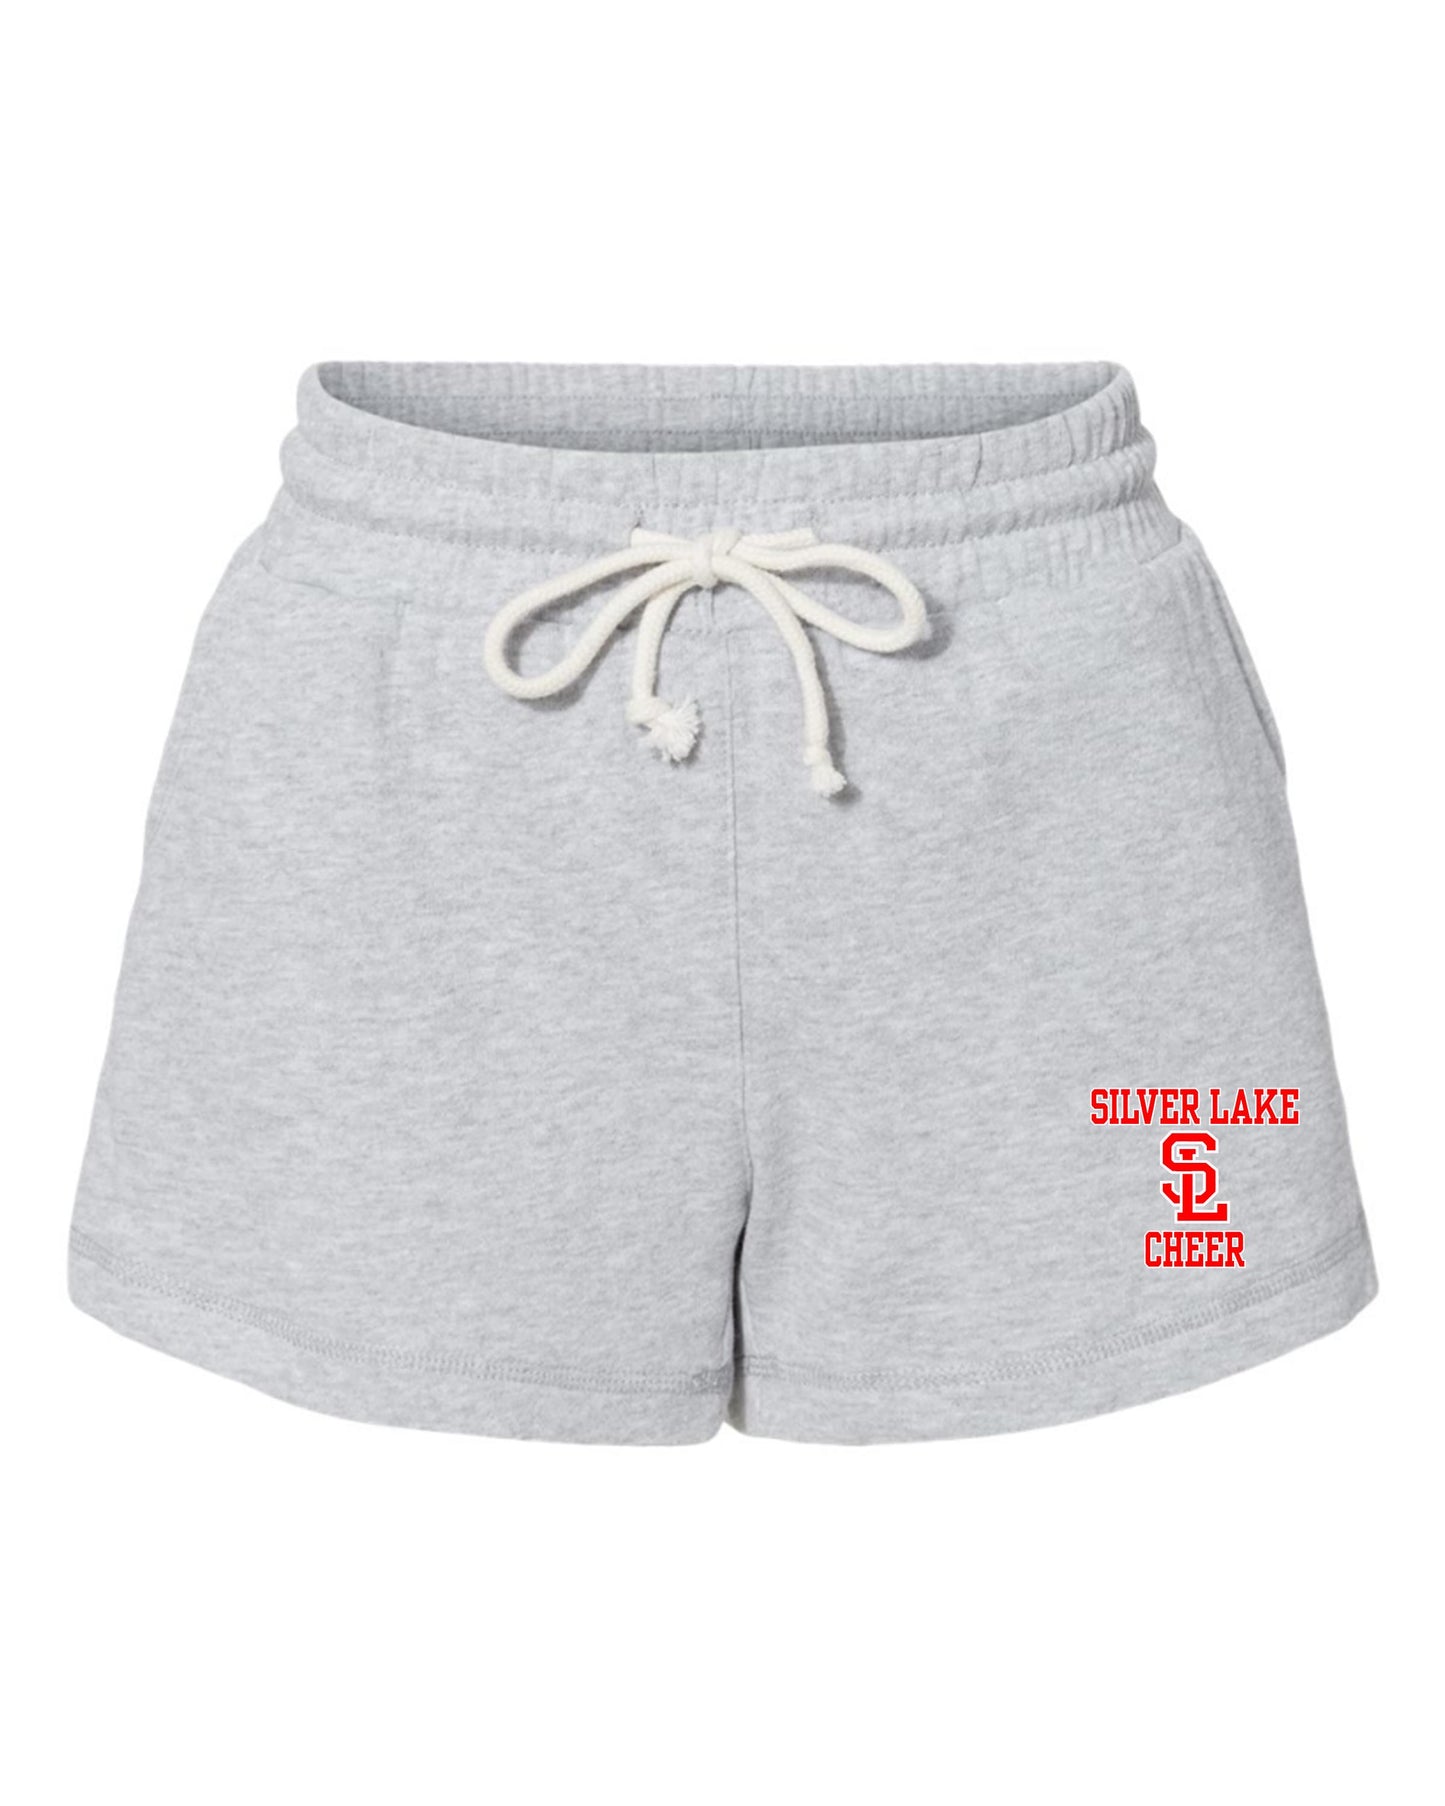 SL Cheer Shorts